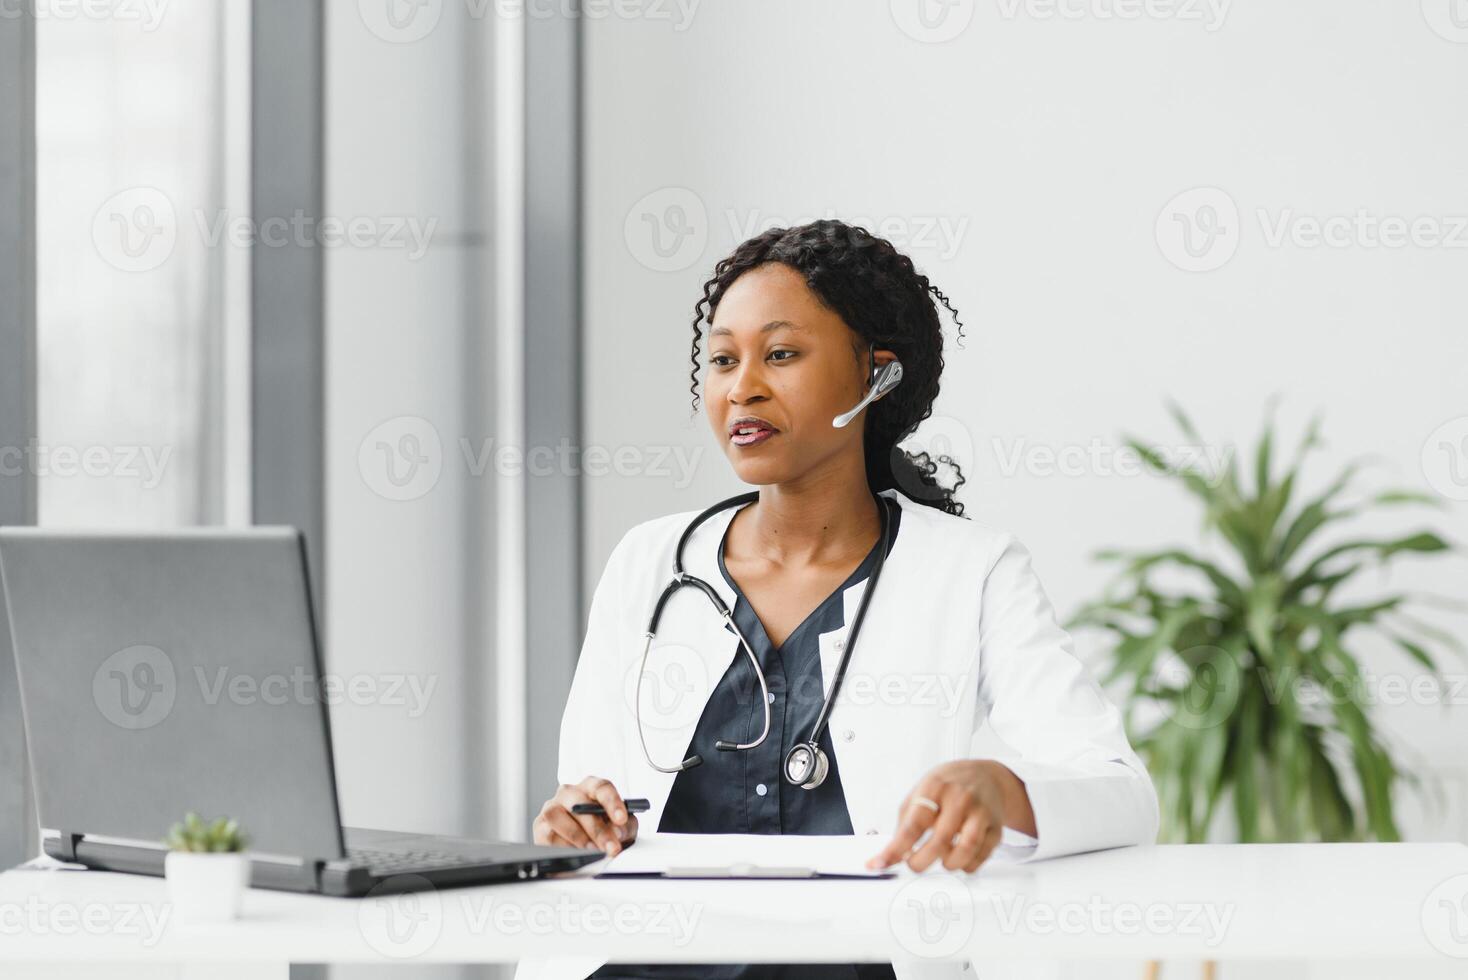 medicinale, in linea servizio e assistenza sanitaria concetto - contento sorridente africano americano femmina medico o infermiera con cuffia e il computer portatile avendo conferenza o video chiamata a Ospedale. foto